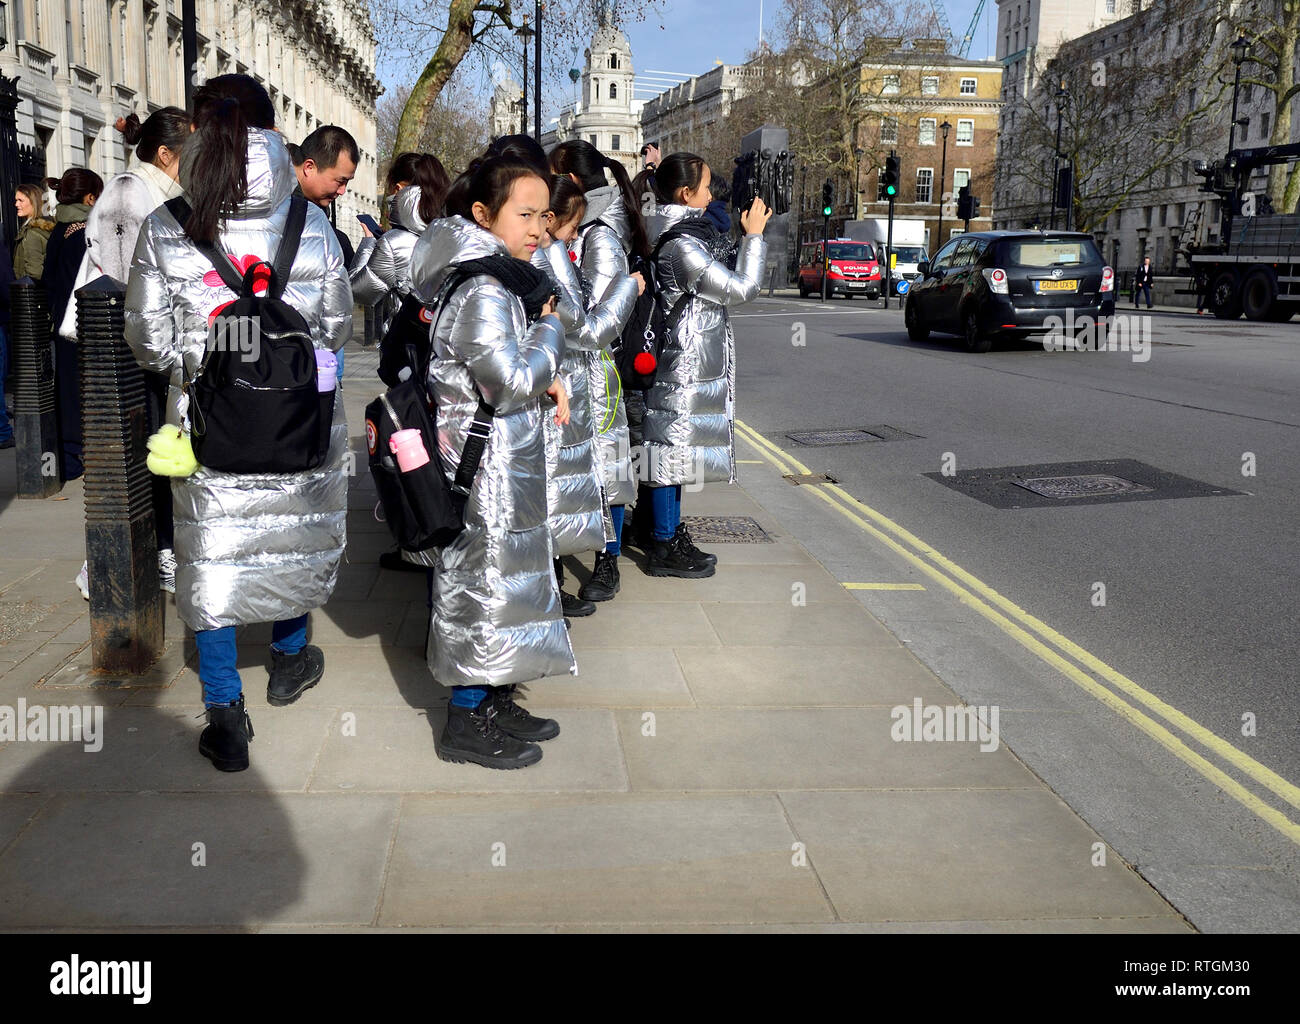 Londra, Inghilterra, Regno Unito. Gruppo di visitare gli scolari giapponesi in argento identici cappotti in Whitehall, al di fuori di Downing Street Foto Stock